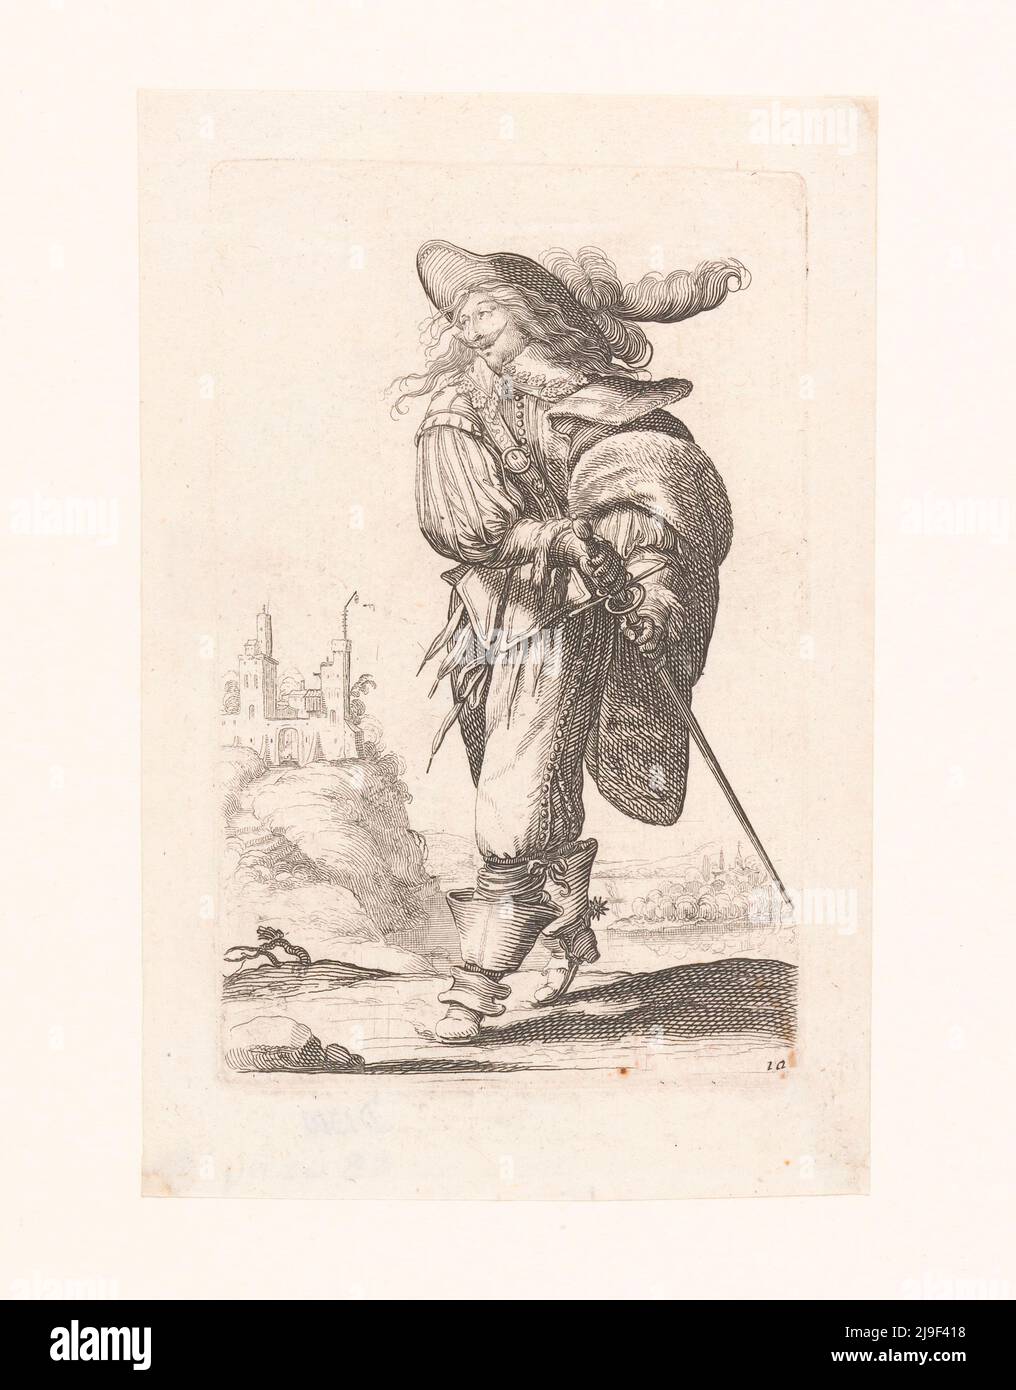 Nobile francese, traendo la spada, vestito secondo la moda di ca. 1629. Di Abraham Bosse, 1629 Foto Stock